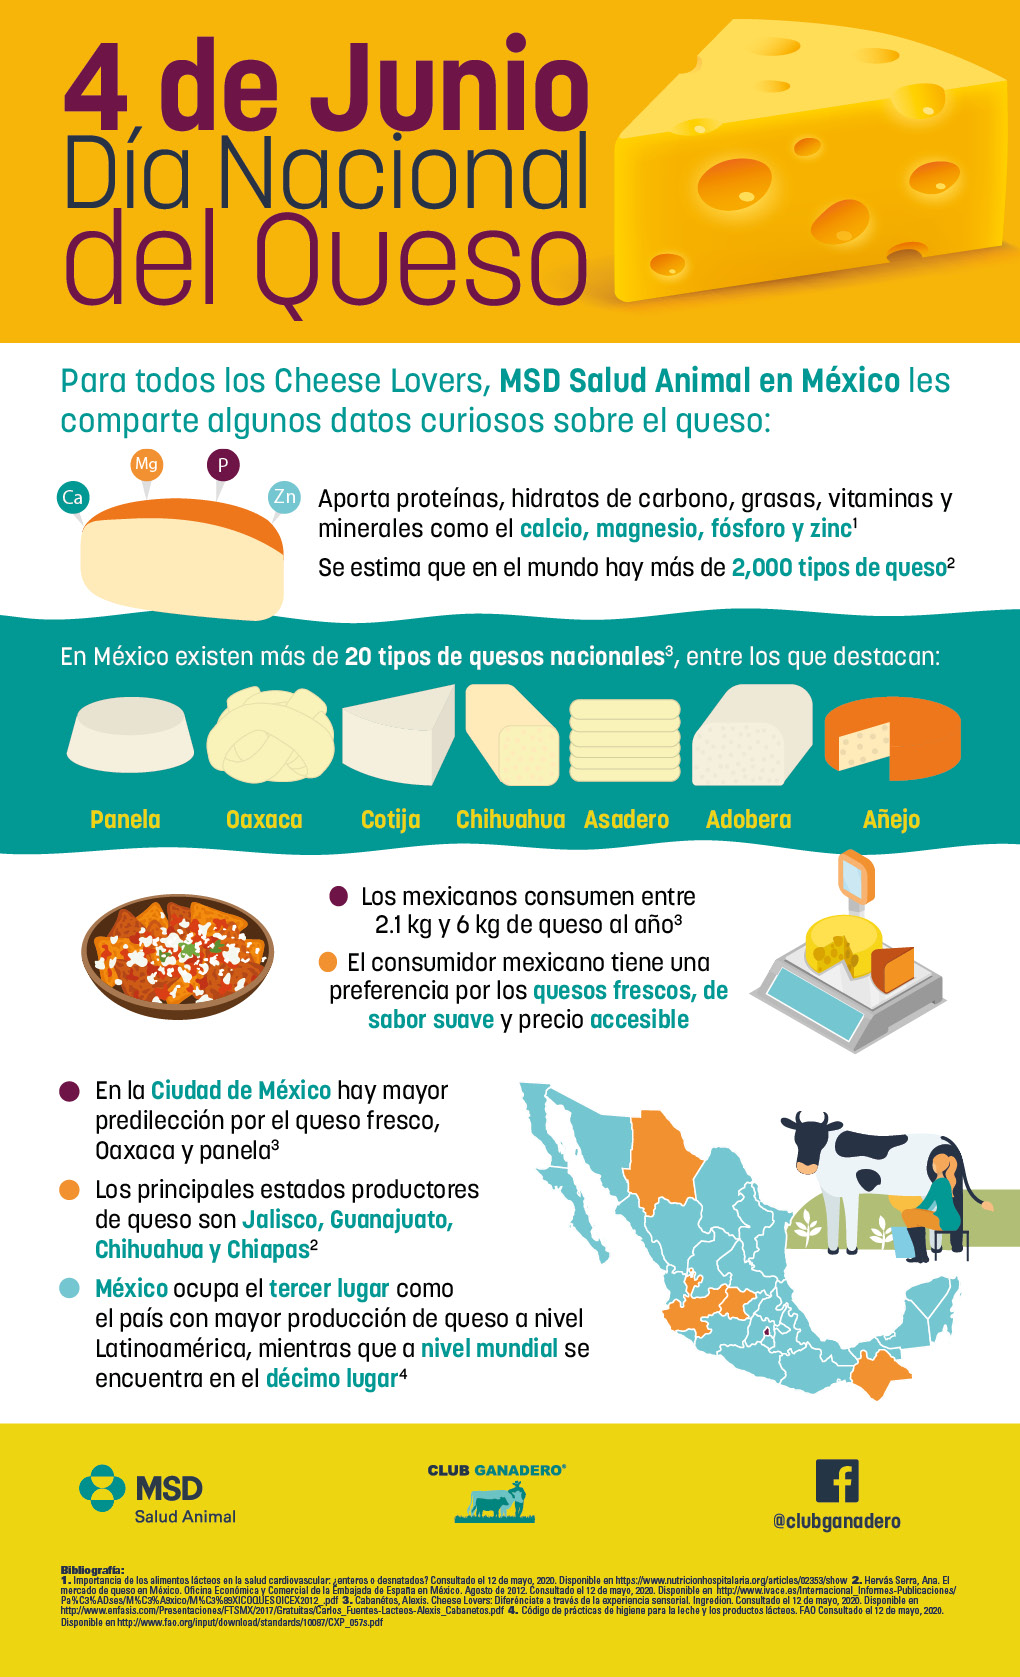 Mexicanos consumen cerca de 6 kilos de queso al año